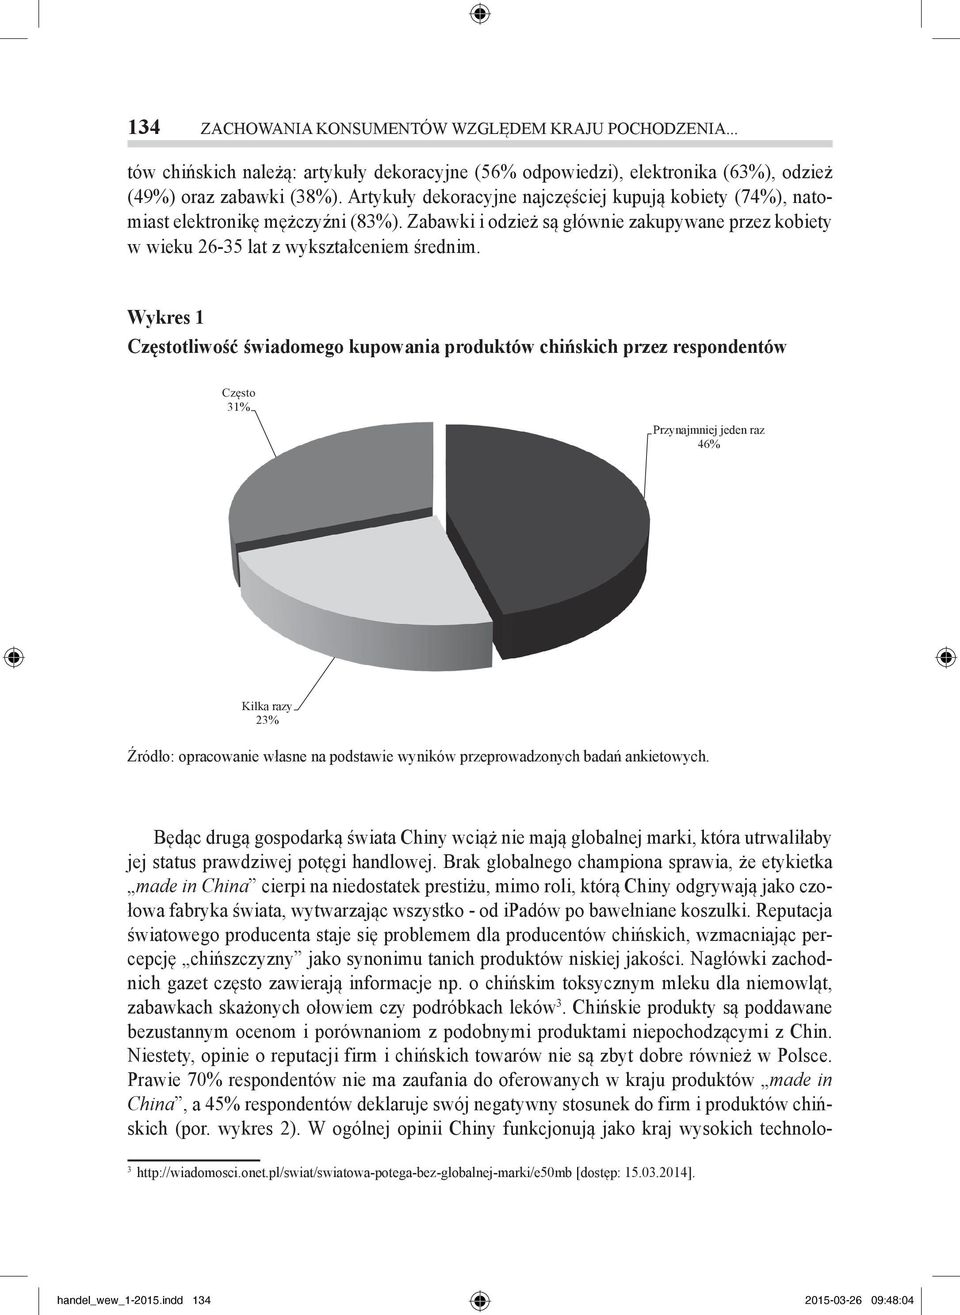 Wykres 1 Częstotliwość świadomego kupowania produktów chińskich przez respondentów Źródło: opracowanie własne na podstawie wyników przeprowadzonych badań ankietowych.